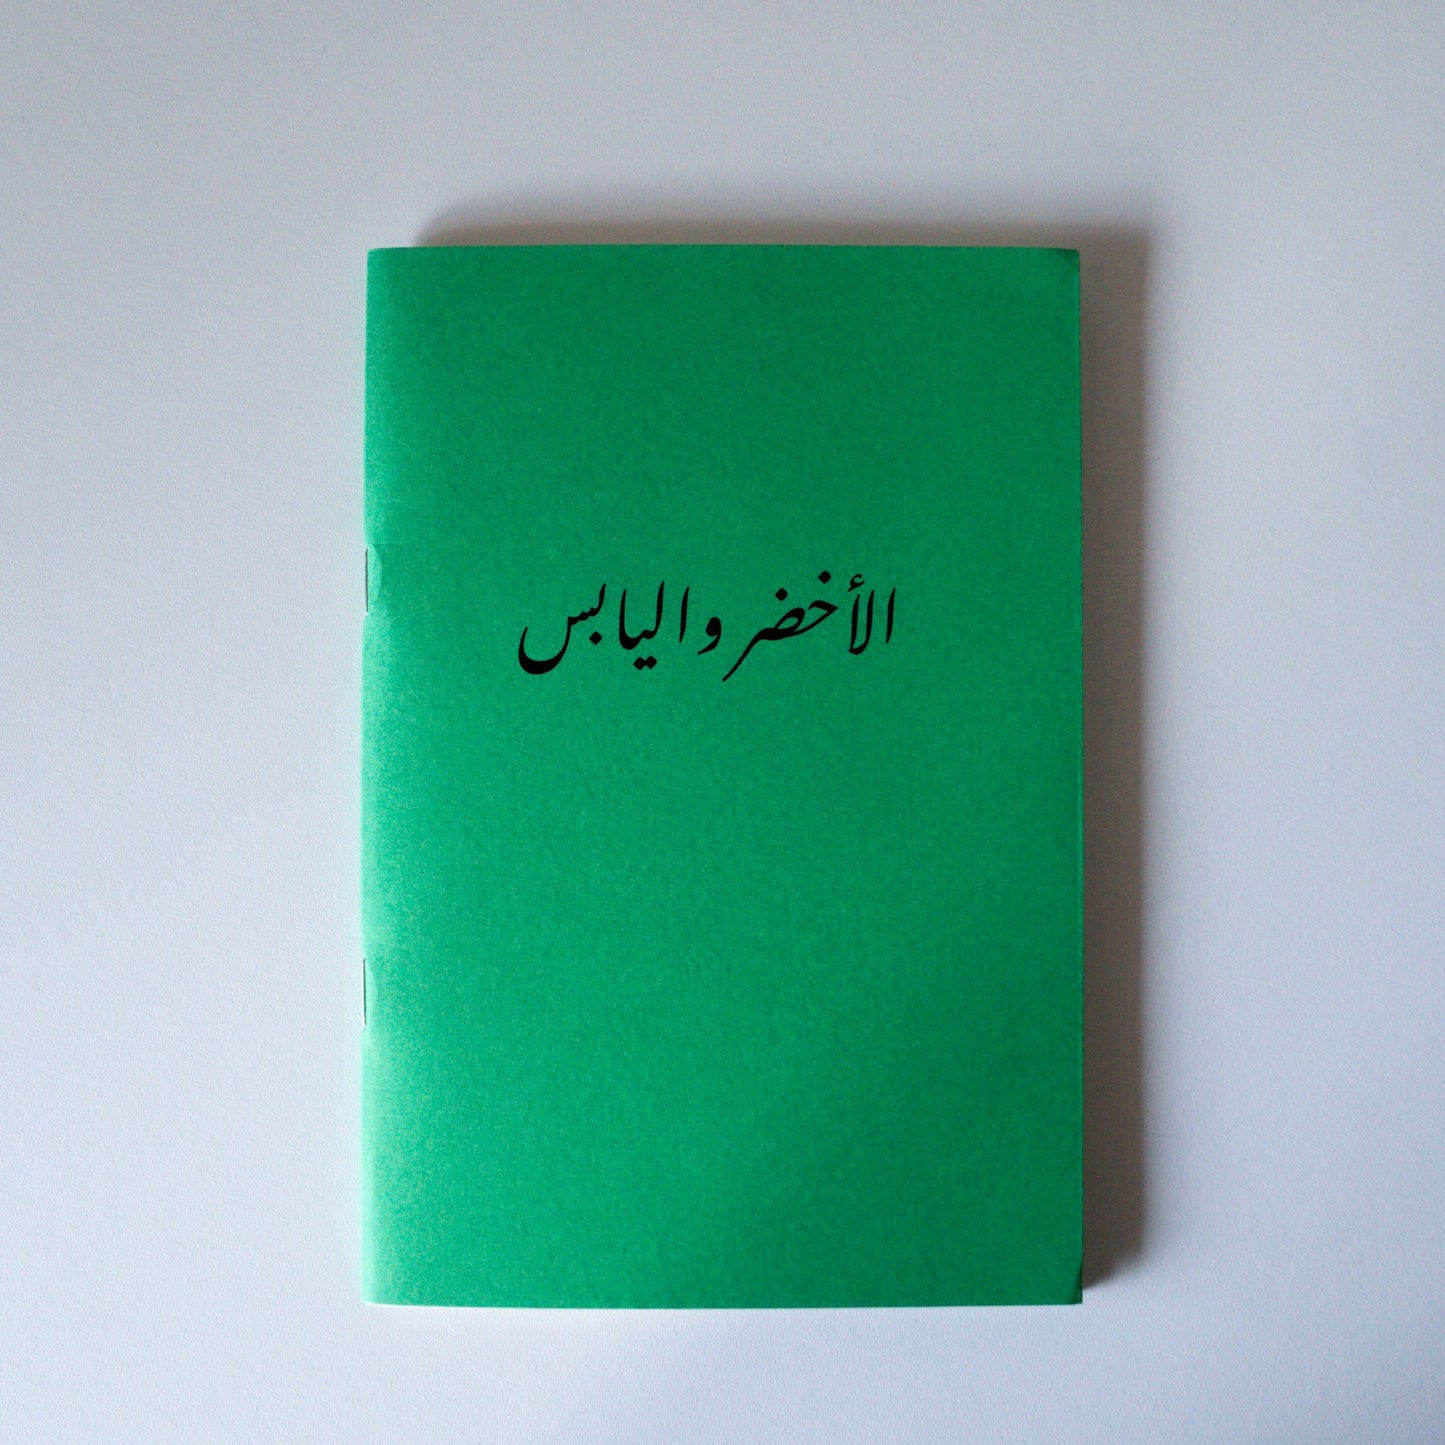 الاخضر و اليابس (Green & Dry) Notebook